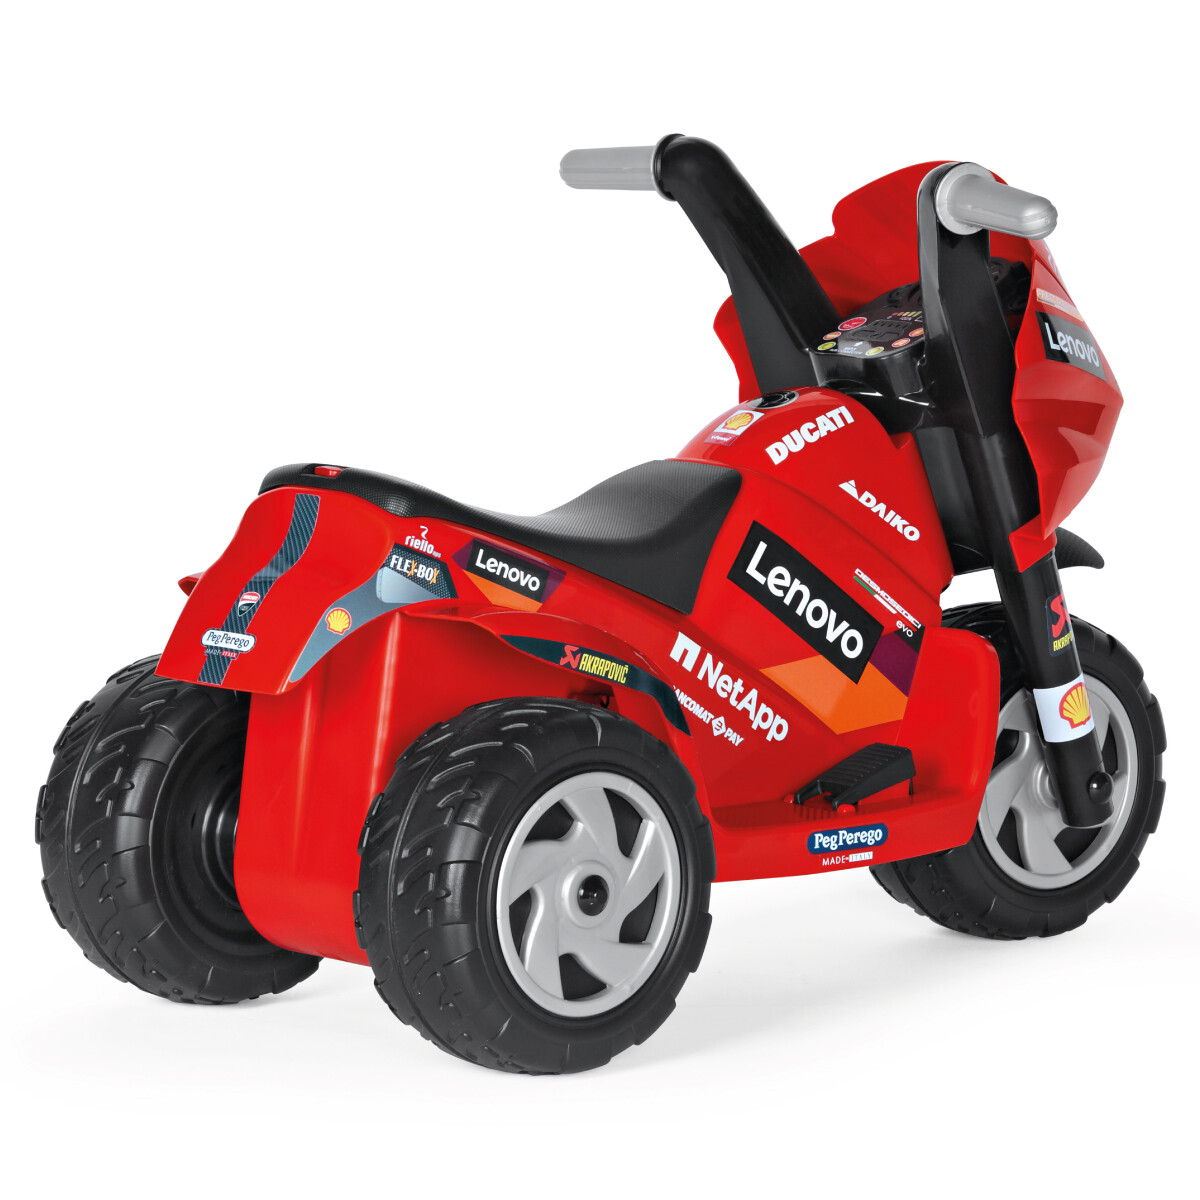 Ducati mini evo, maxi divertimento! la moto elettrica per bambini con luci  e suoni. - Toys Center